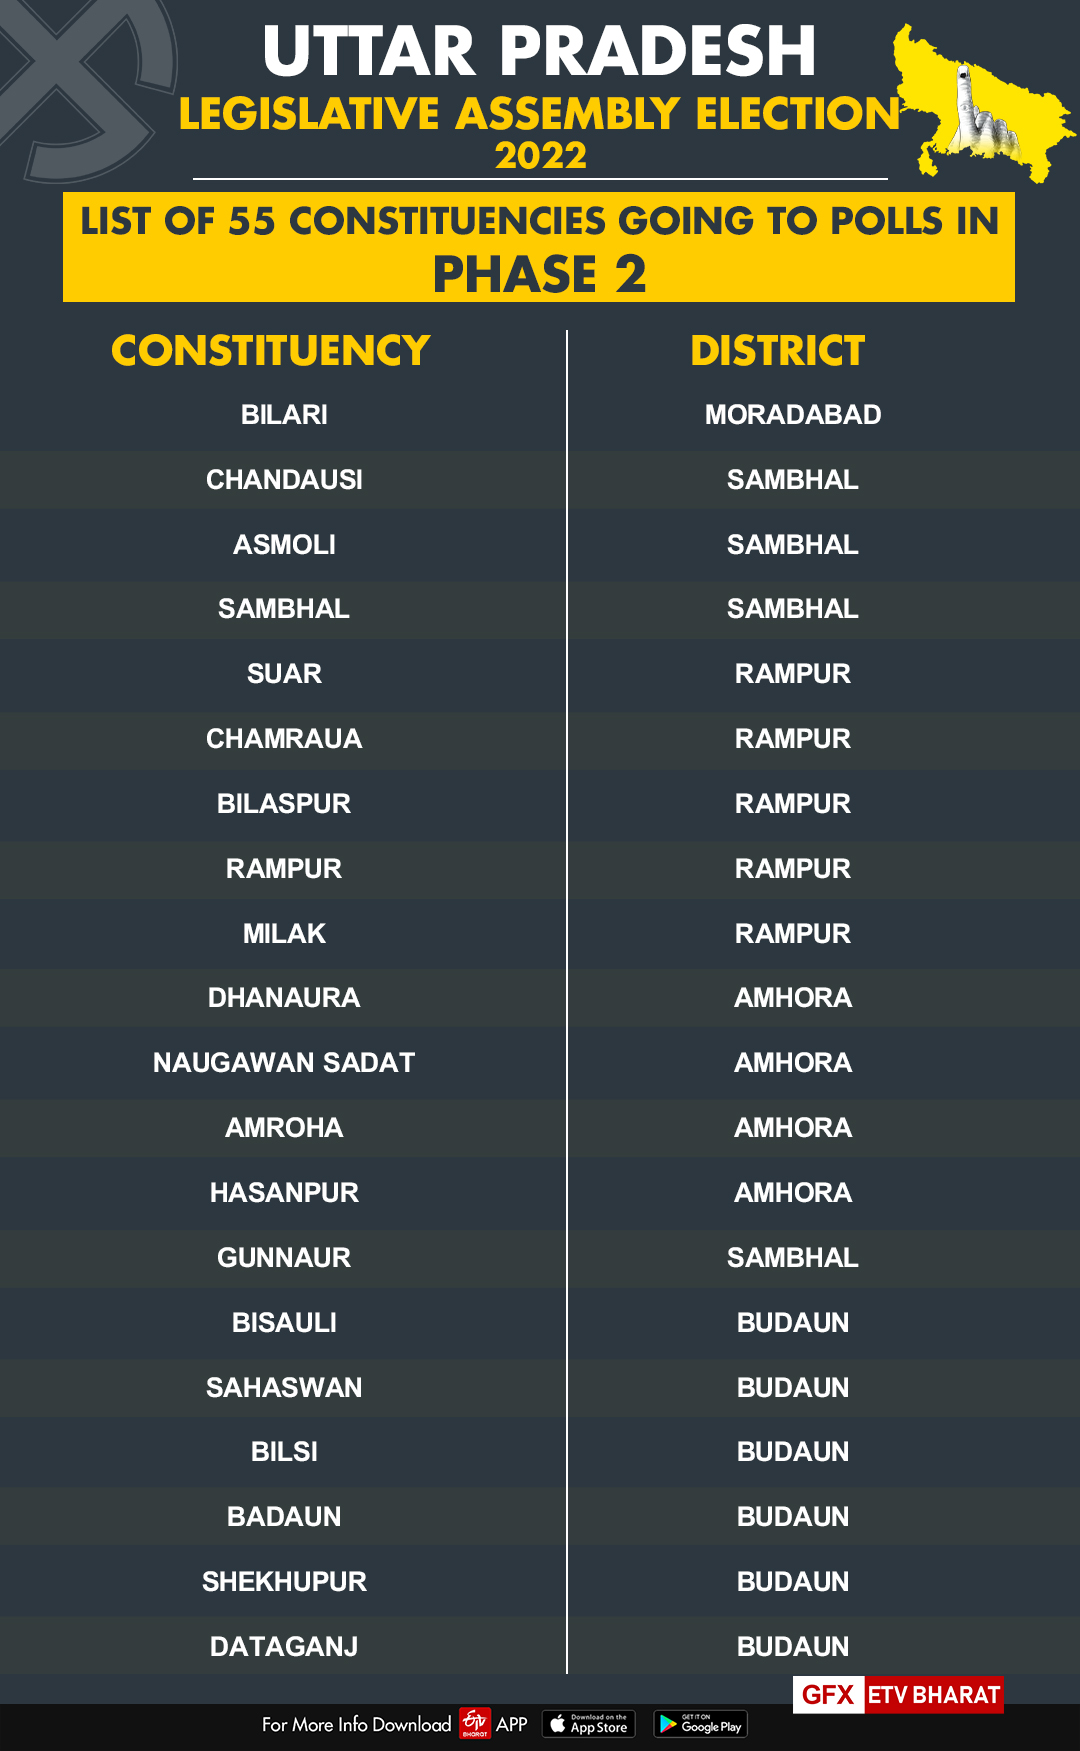 List of constituencies